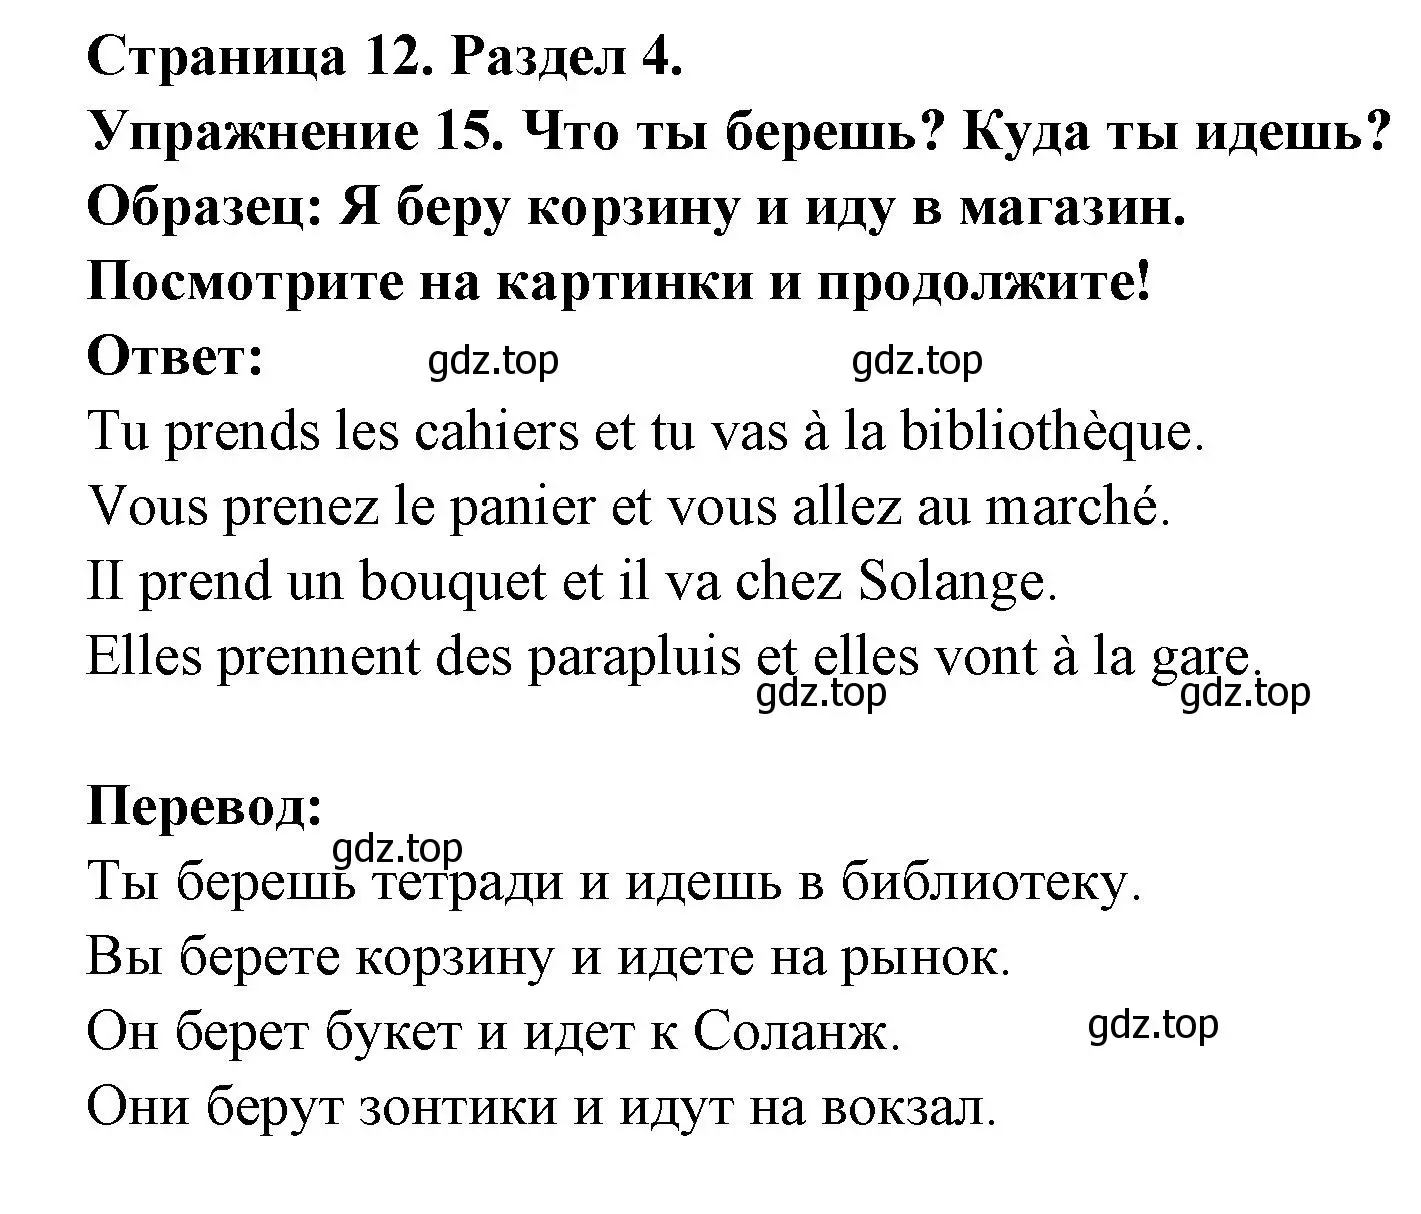 Решение номер 15 (страница 12) гдз по французскому языку 5 класс Береговская, Белосельская, учебник 2 часть